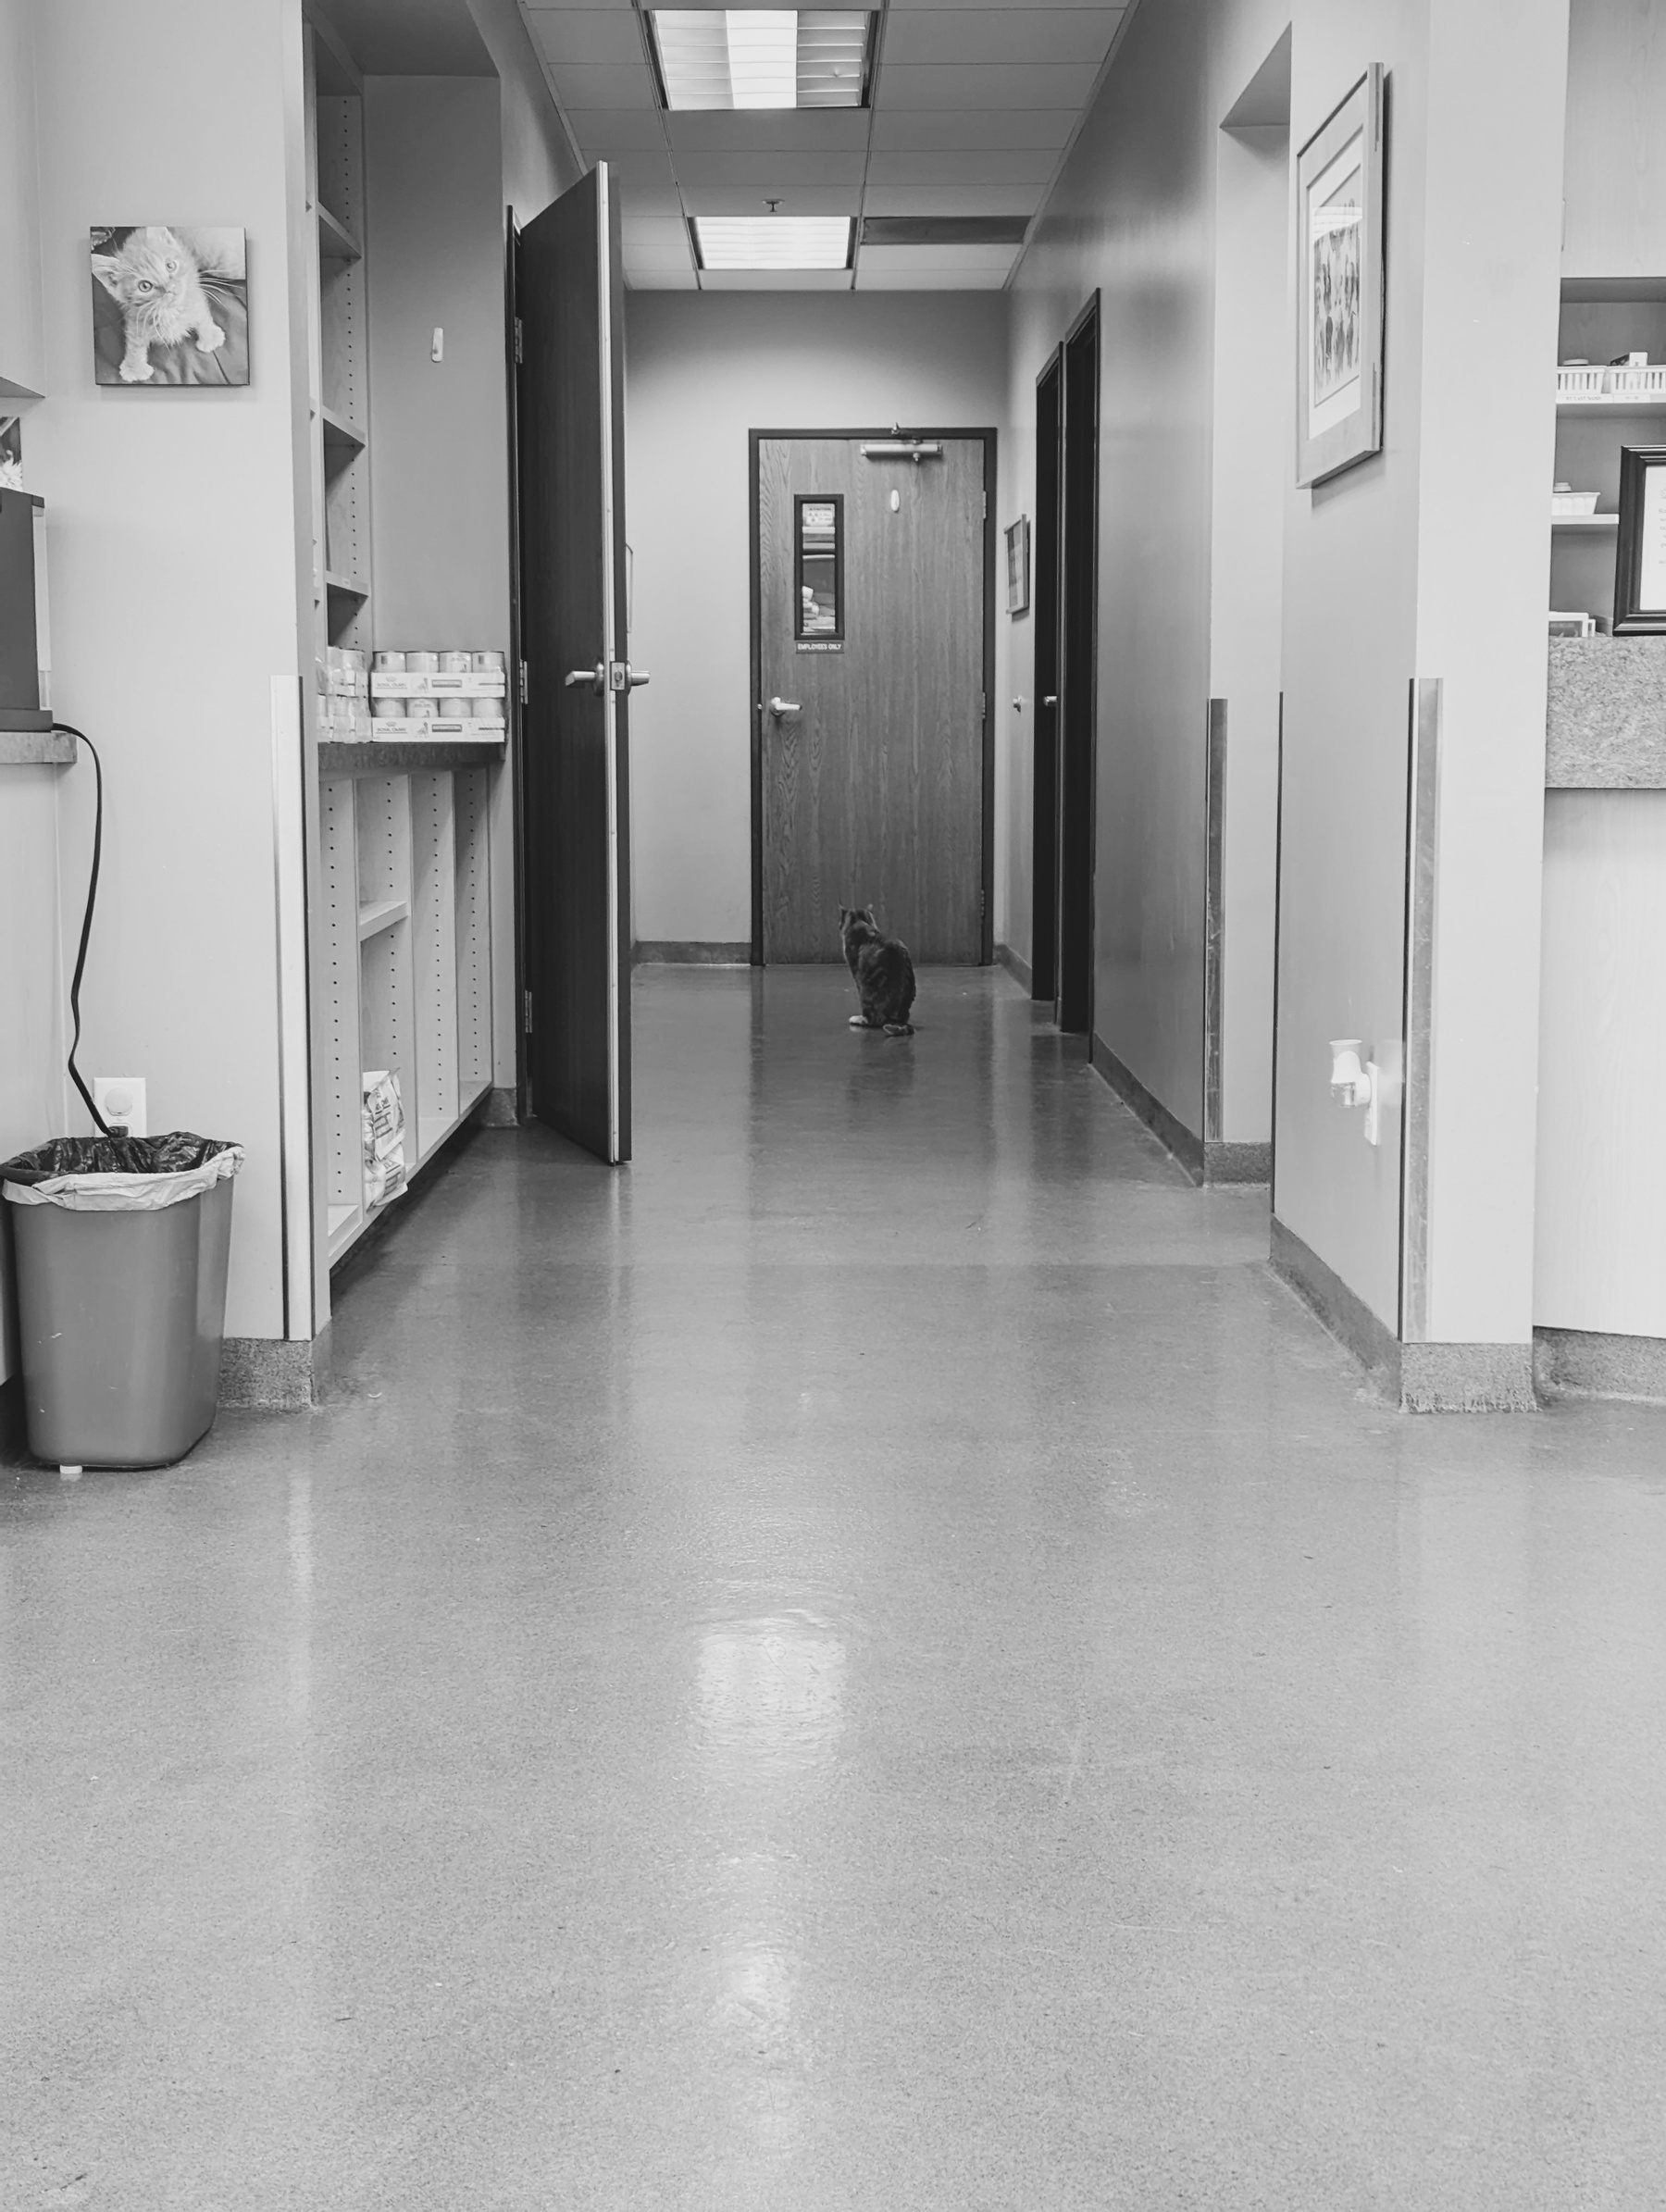 Cat sitting in a hallway